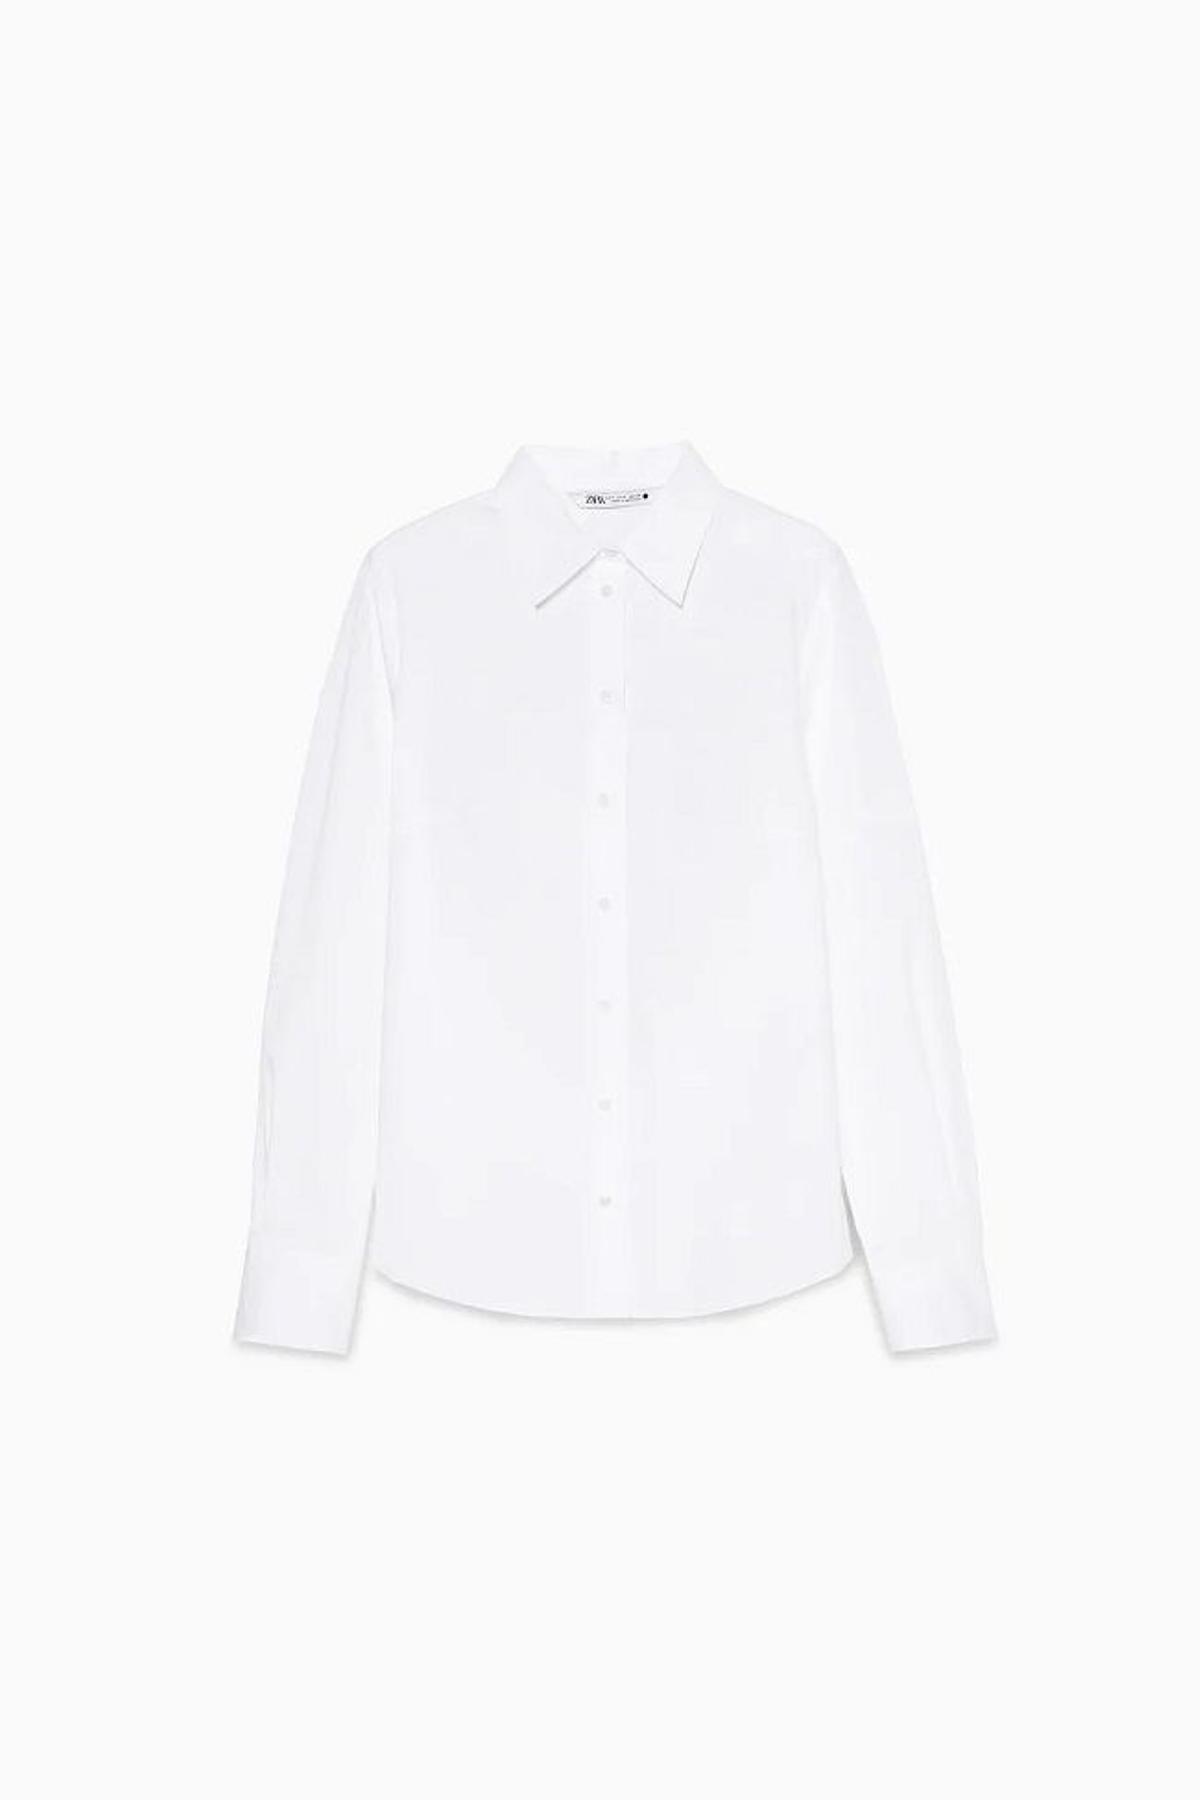 La camisa blanca